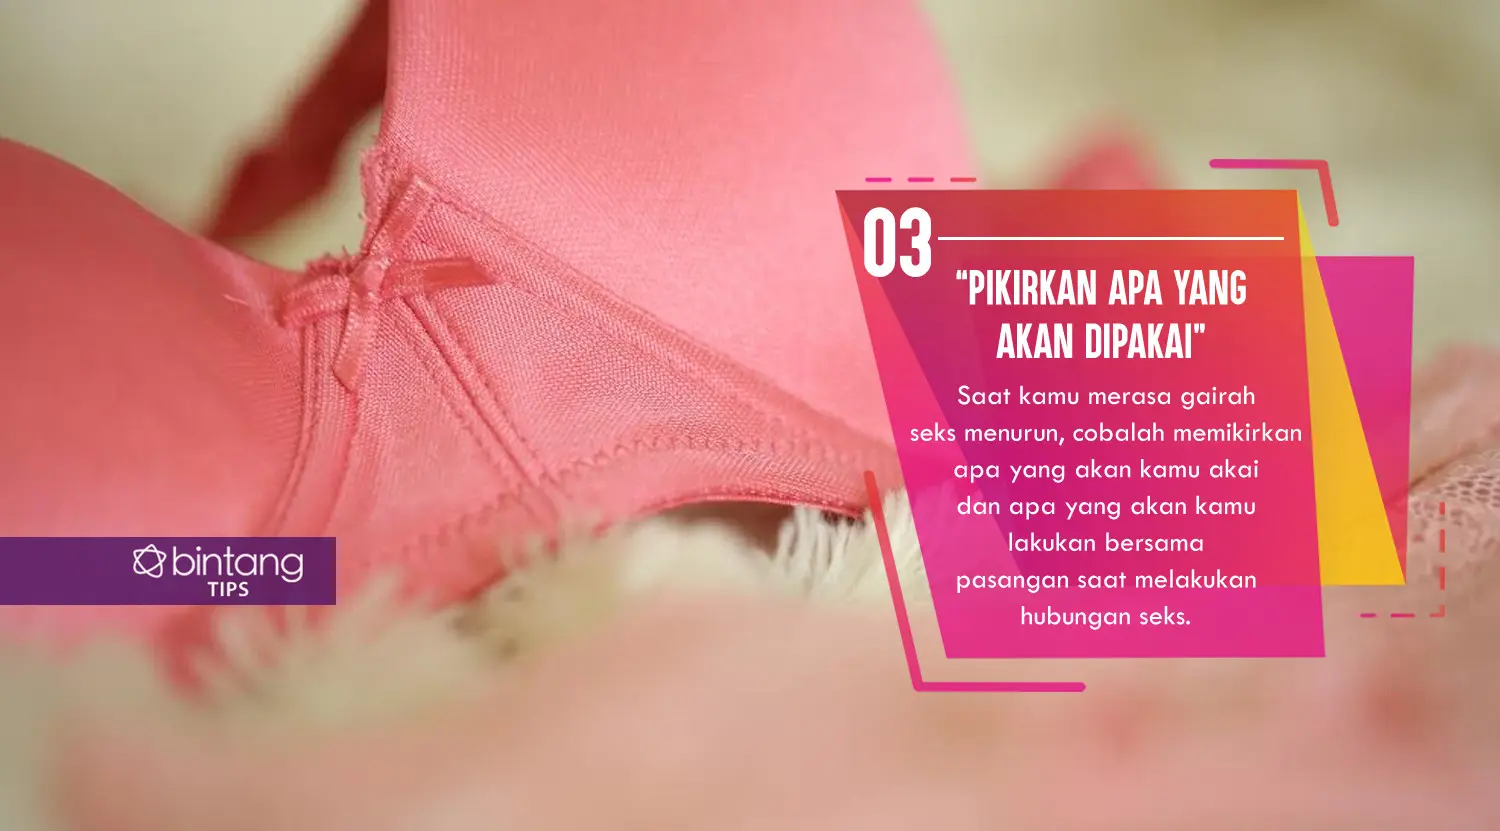 Cara tingkatkan gairah seks dalam sekejap. (Foto: Daniel Kampua, Digital Imaging: Nurman Abdul Hakim/Bintang.com)